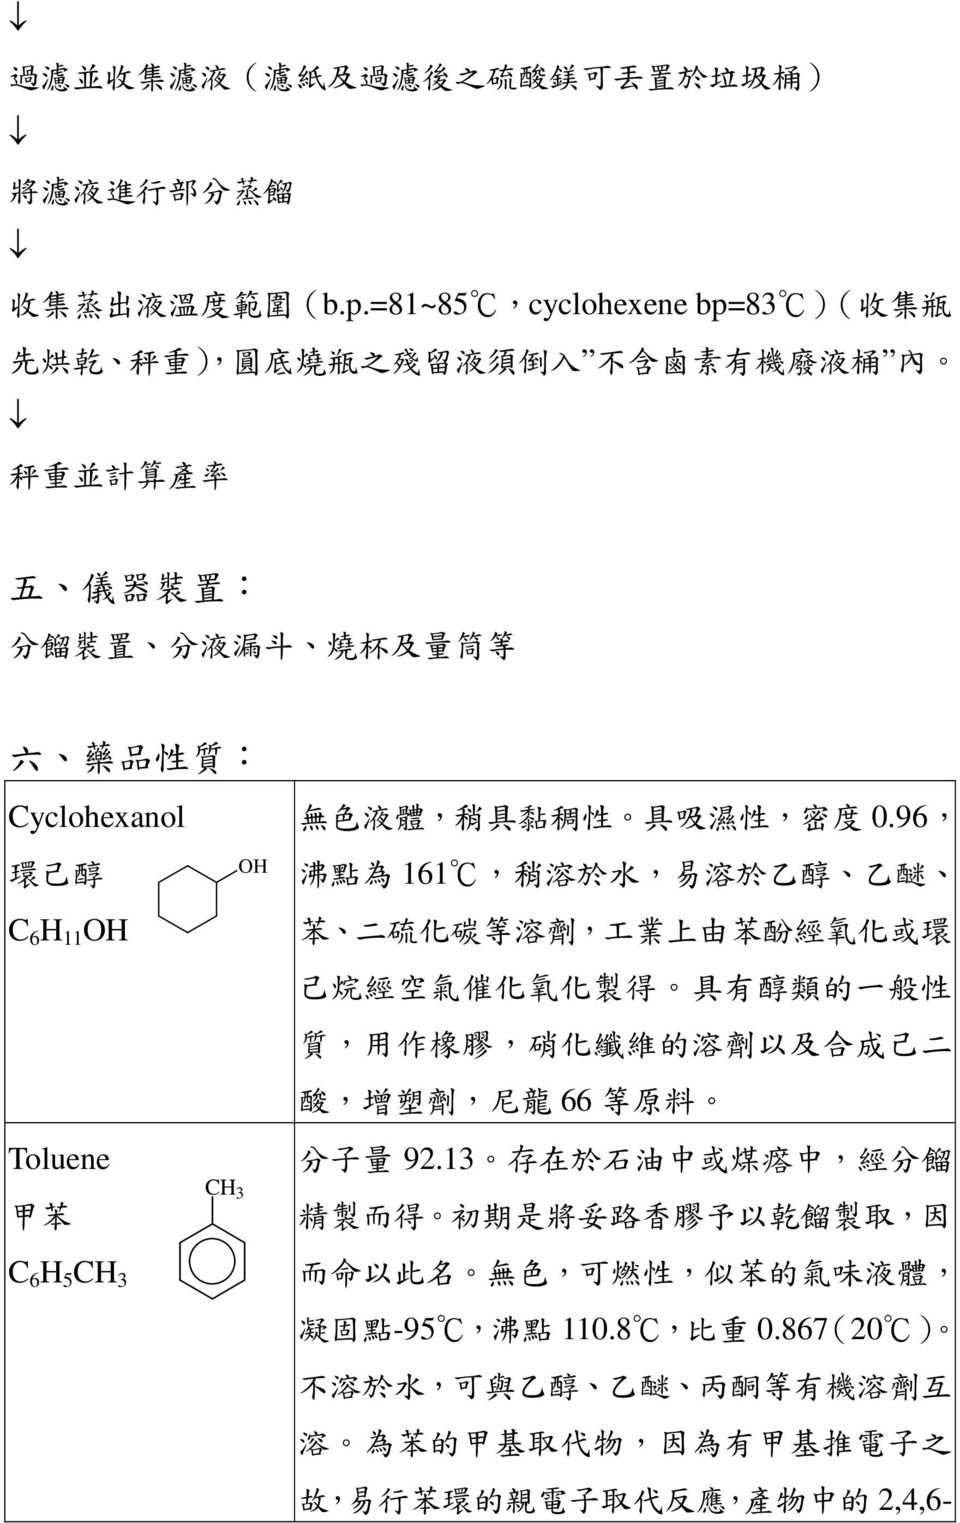 O Toluene 甲苯 6 5 3 O 3 無色液體, 稍具黏稠性 具吸濕性, 密度 0.